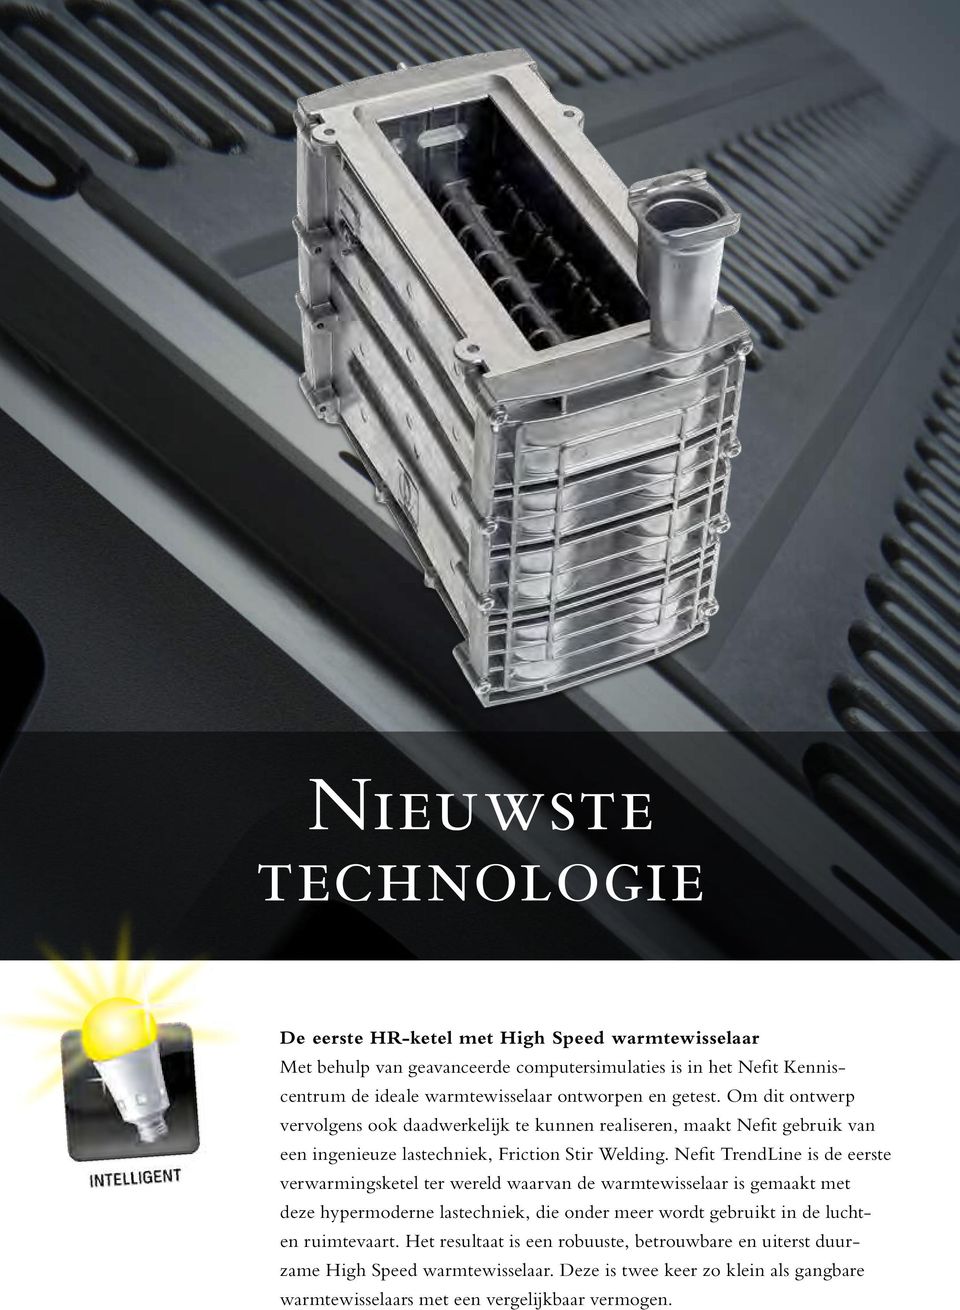 Nefit TrendLine is de eerste verwarmingsketel ter wereld waarvan de warmtewisselaar is gemaakt met deze hypermoderne lastechniek, die onder meer wordt gebruikt in de luchten